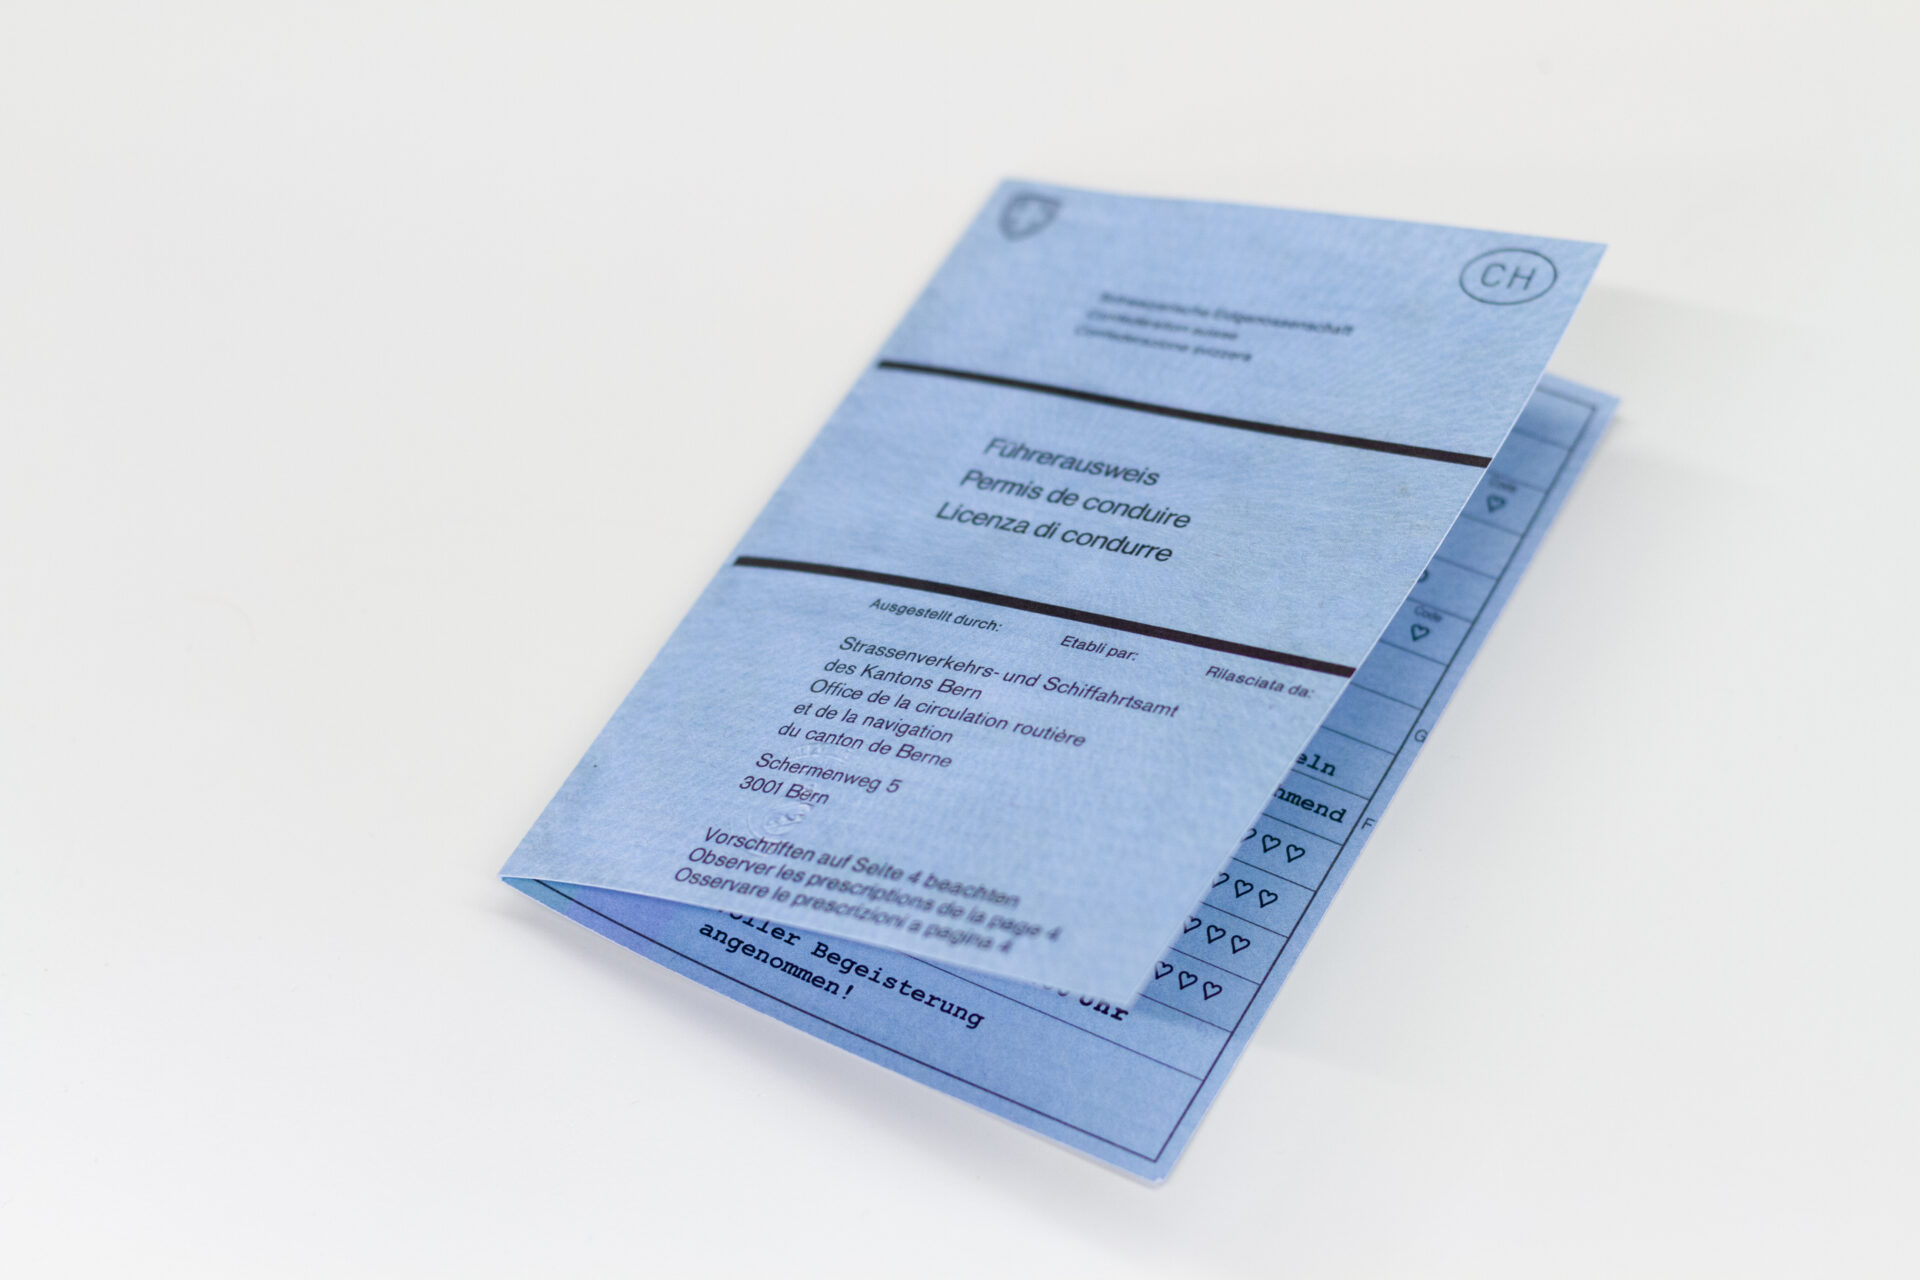 Tanner Druck AG, Geburtskarte als Fahrzeugausweis gestaltet